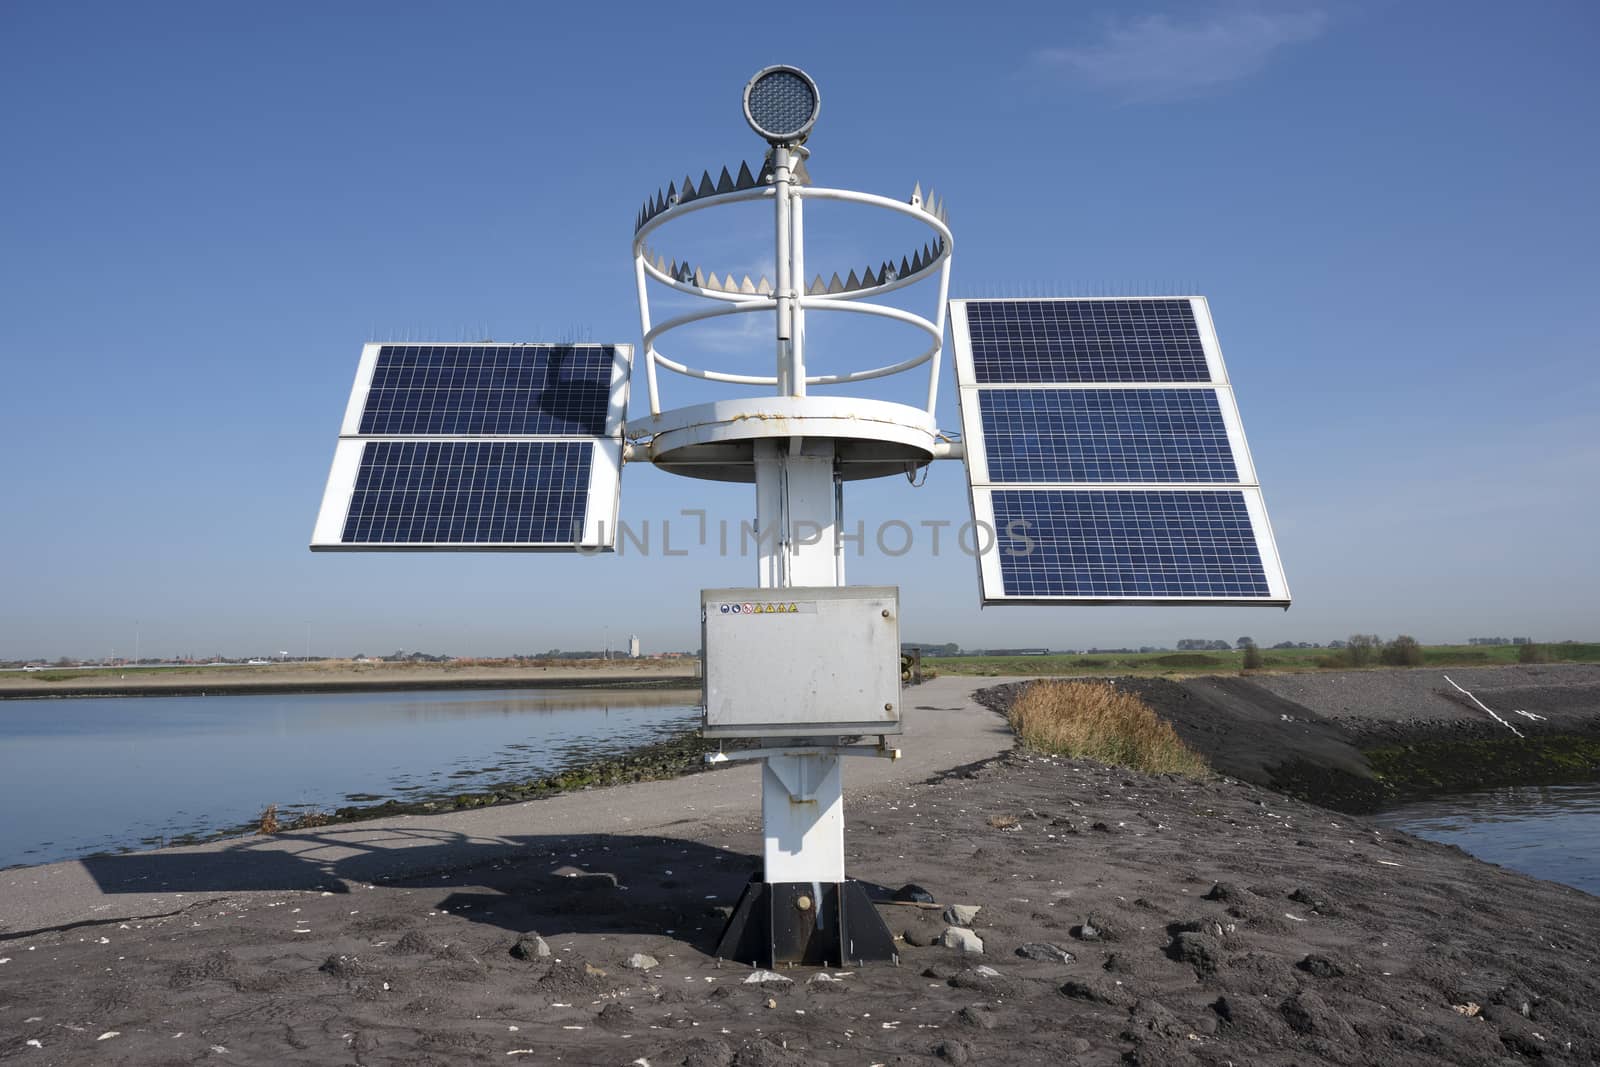 solar panel for lake harbor lighthouse energy, blue sky.